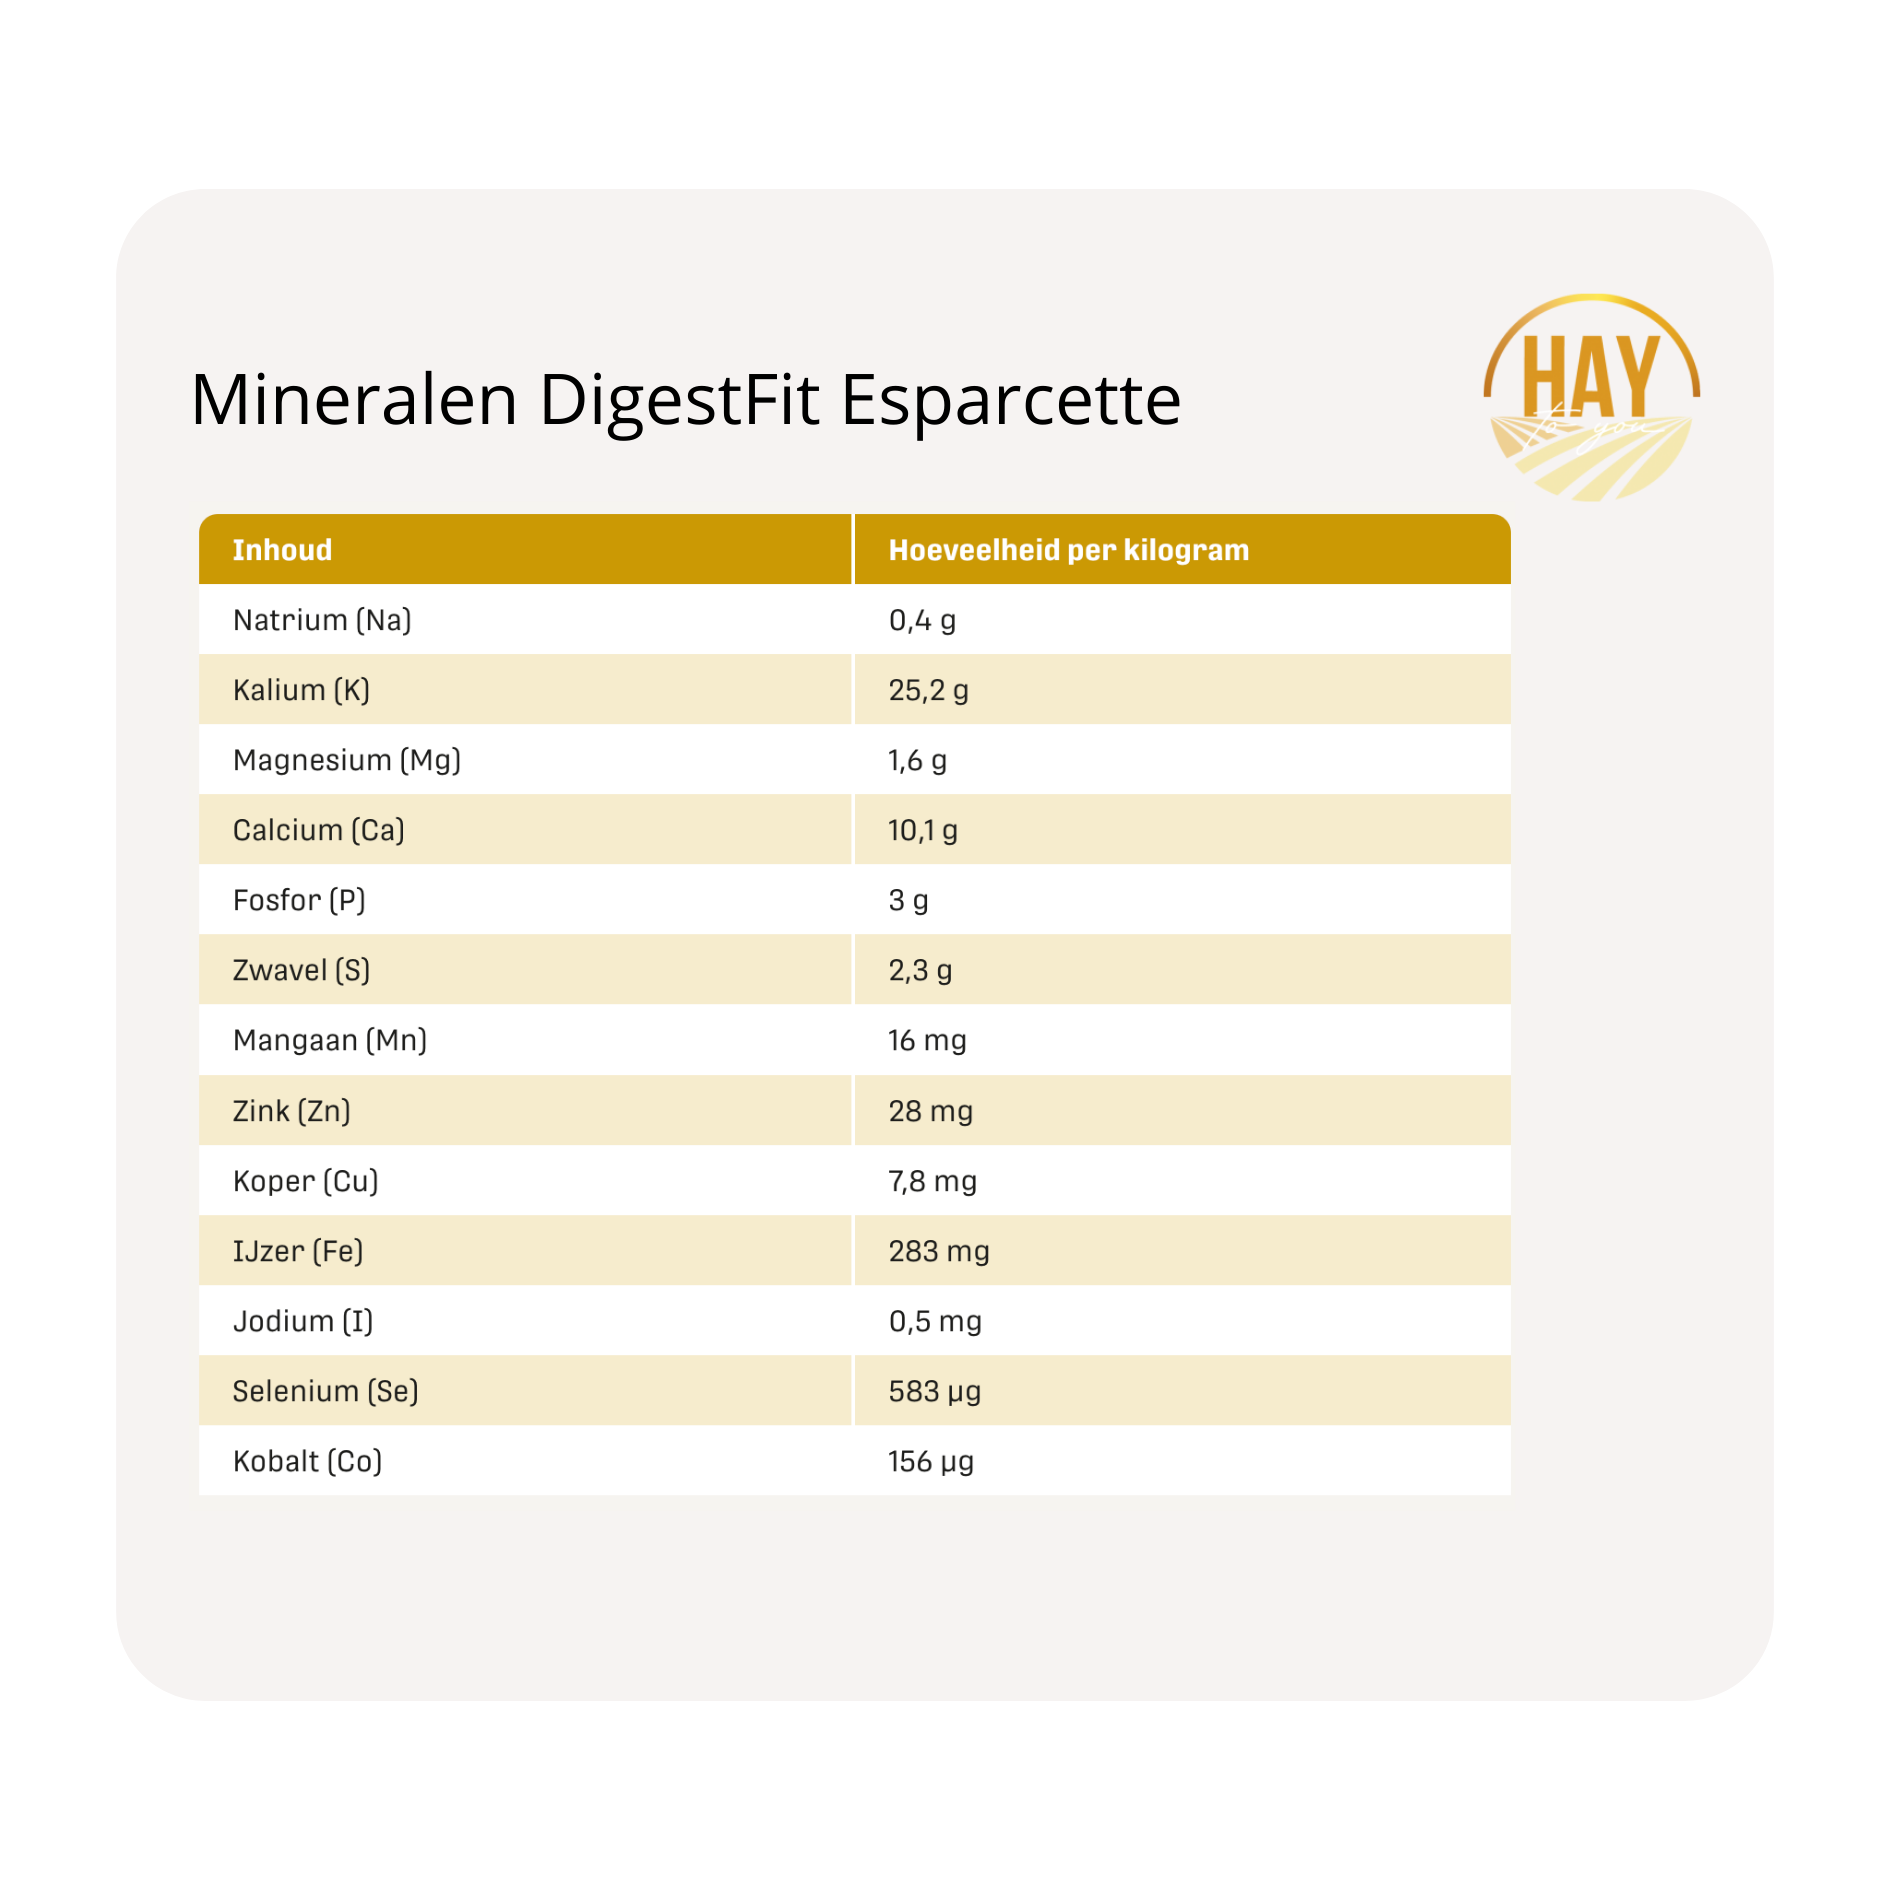 mineralen Metazoa krachtvoer en supplementen DigestFit Esparcette